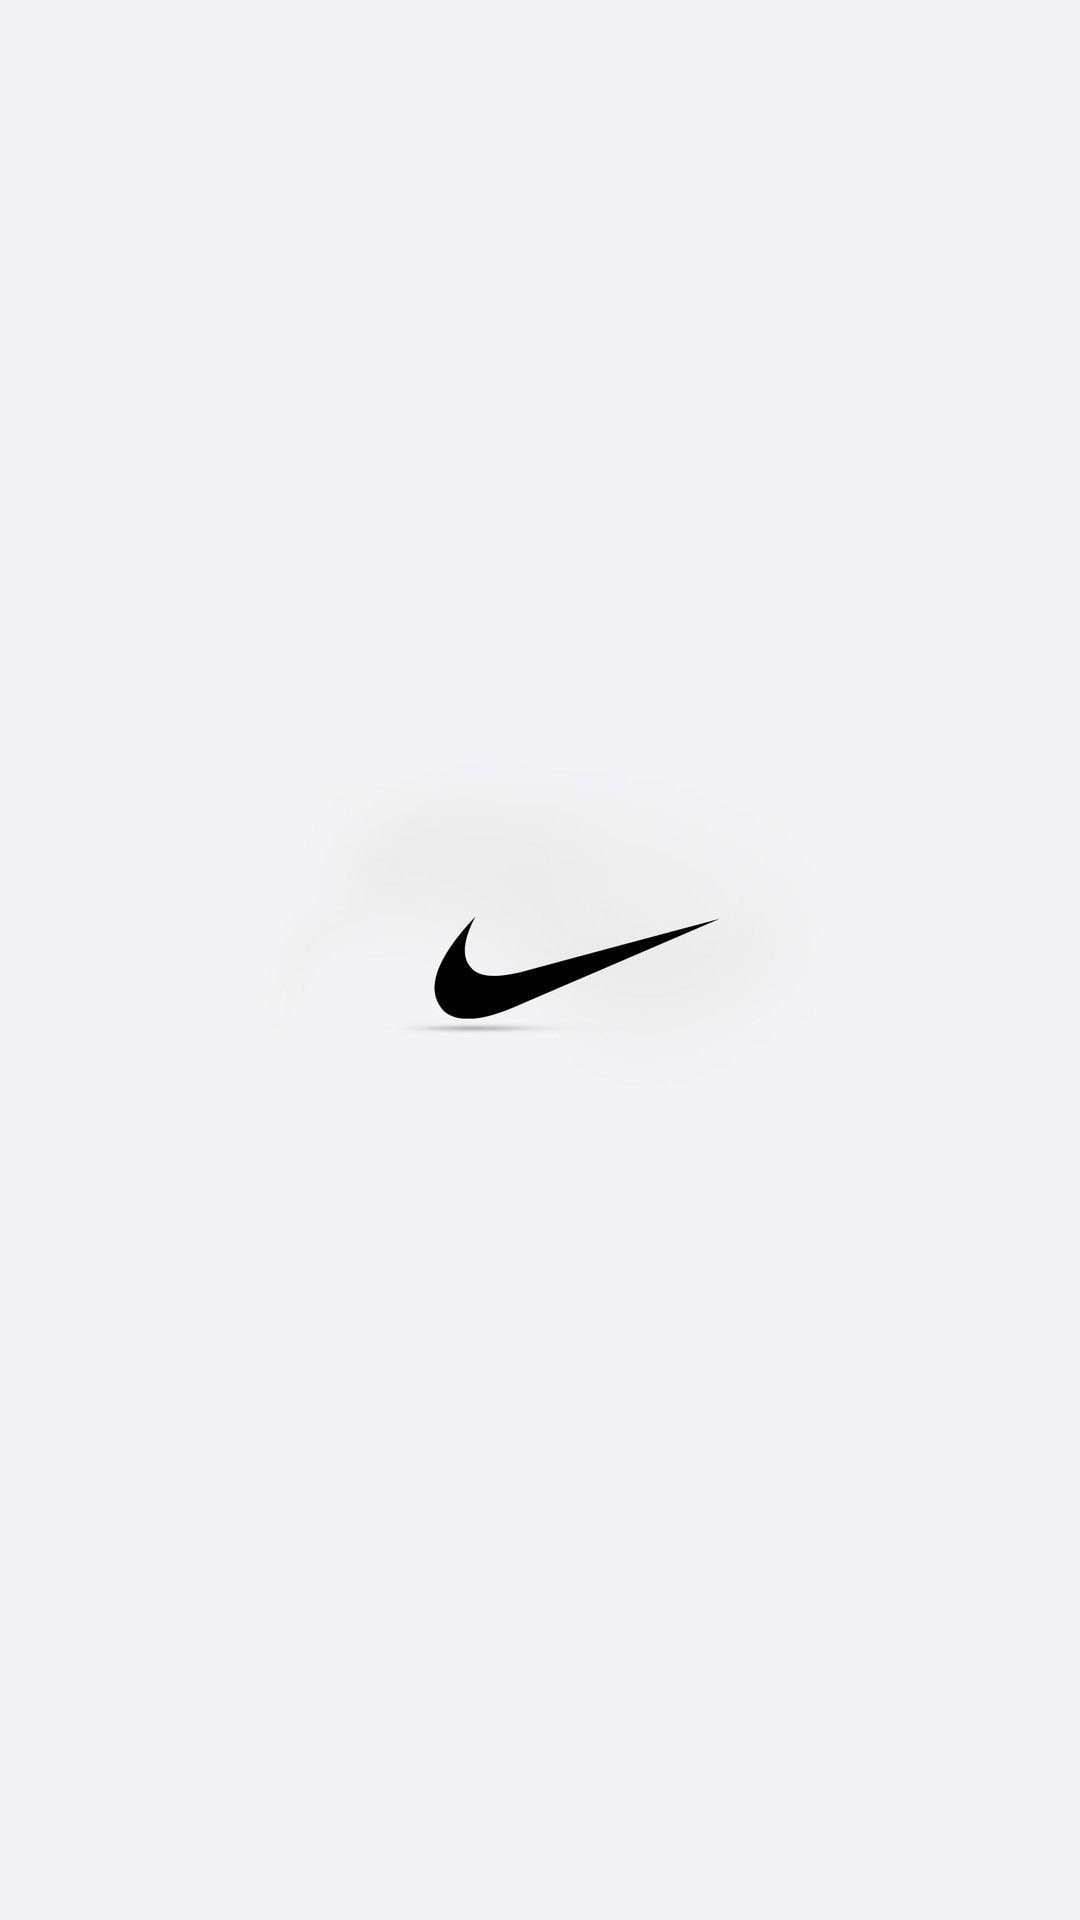 Bạn đang muốn tìm hình nền đẹp để trang trí cho máy tính của mình? Đây là bức hình nền Nike Desktop Wallpaper mà bạn đang tìm kiếm. Với thiết kế độc đáo và màu sắc tươi sáng, bức hình này sẽ khiến cho màn hình của bạn trở nên hấp dẫn và lôi cuốn hơn. Hãy tải ngay để cùng trải nghiệm nhé!